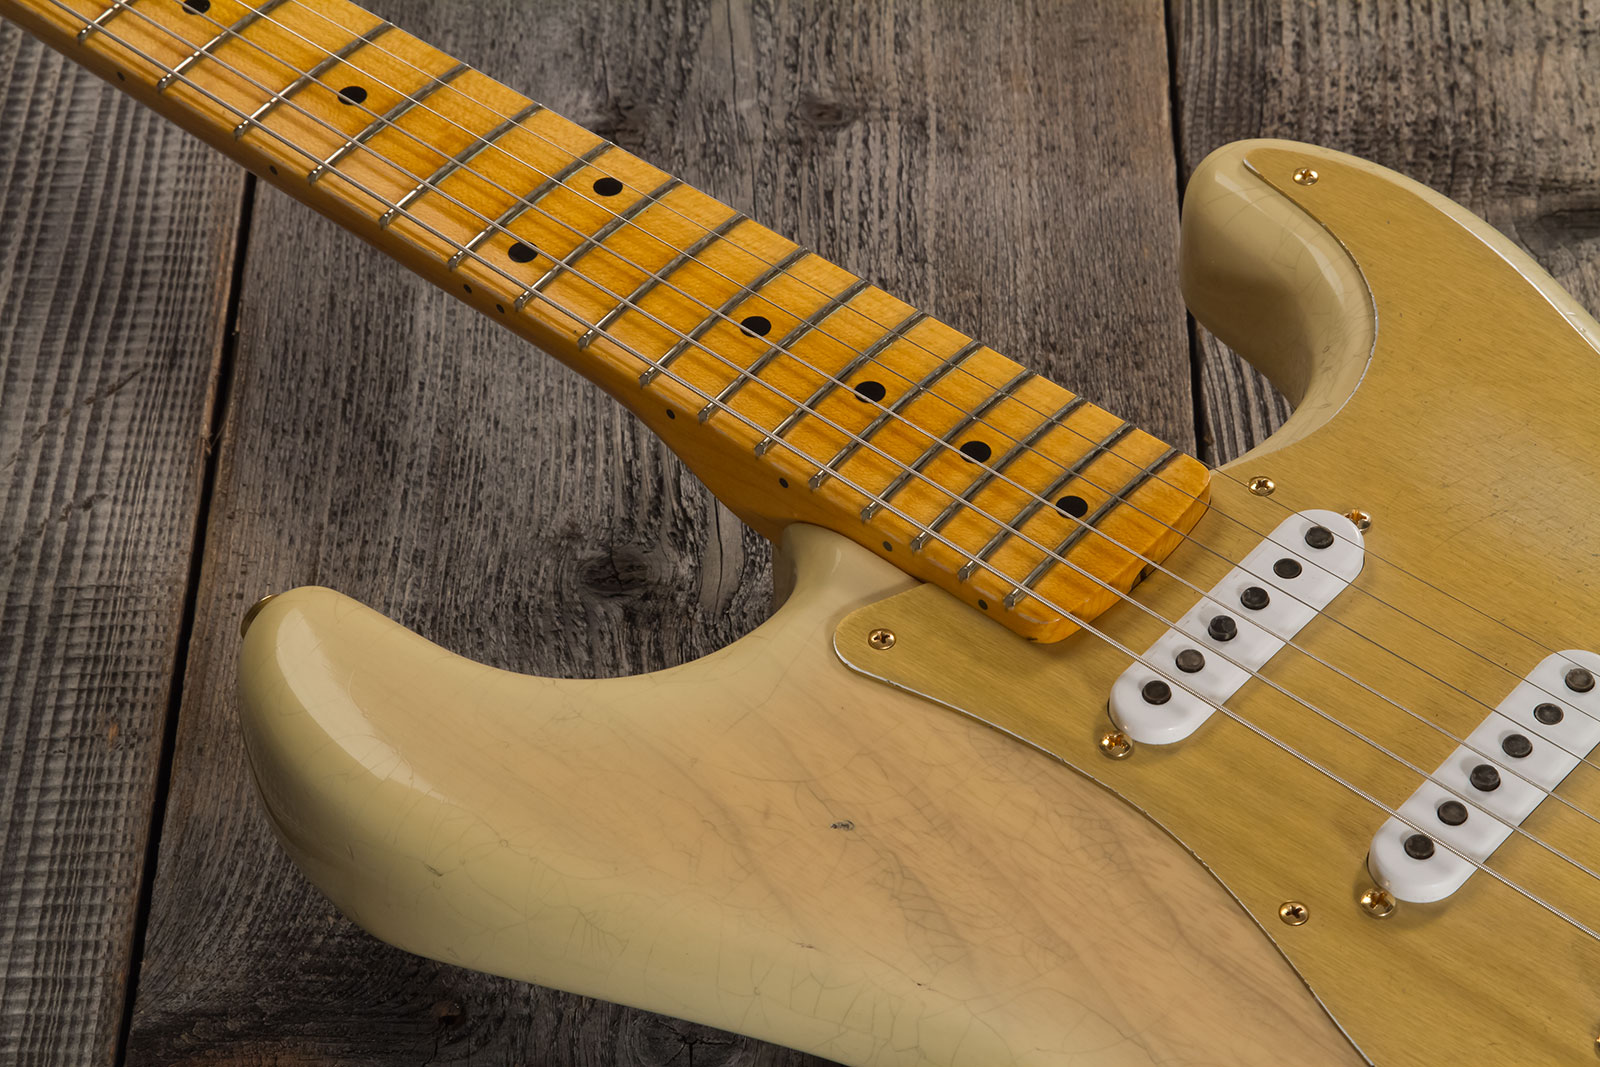 Fender Custom Shop Strat 1955 Hardtail Gold Hardware 3s Trem Mn #cz568215 - Journeyman Relic Natural Blonde - Guitare Électrique Forme Str - Variation